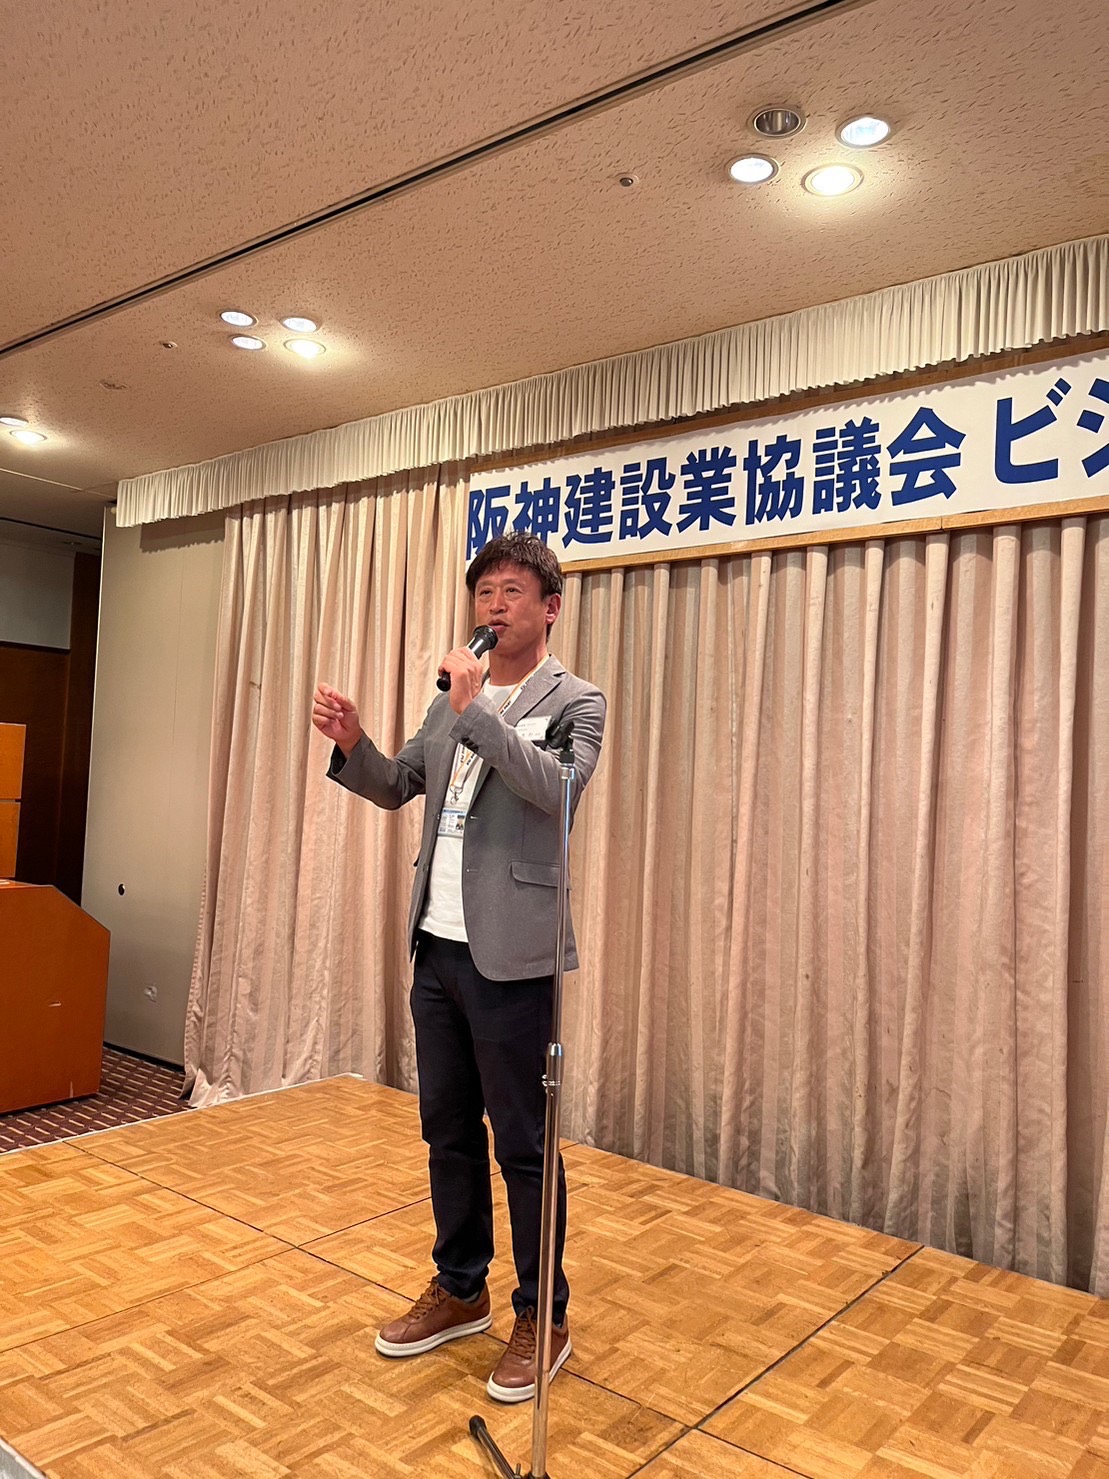 「阪神建設業協議会ビジネスセミナー」で講演をさせていただきました。